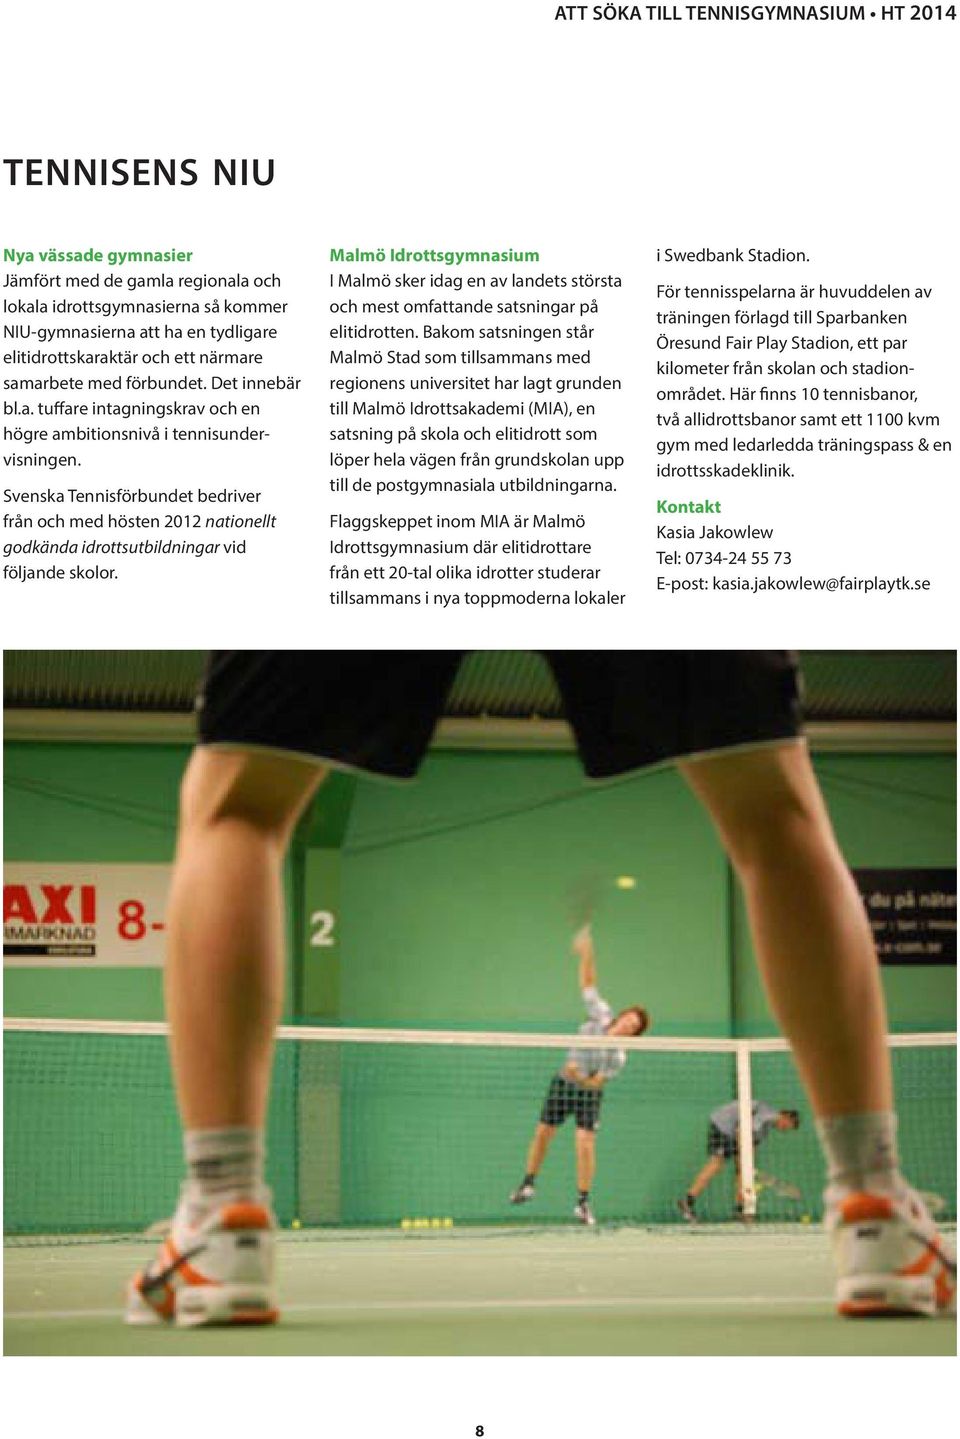 Svenska Tennisförbundet bedriver från och med hösten 2012 nationellt godkända idrottsutbildningar vid följande skolor.